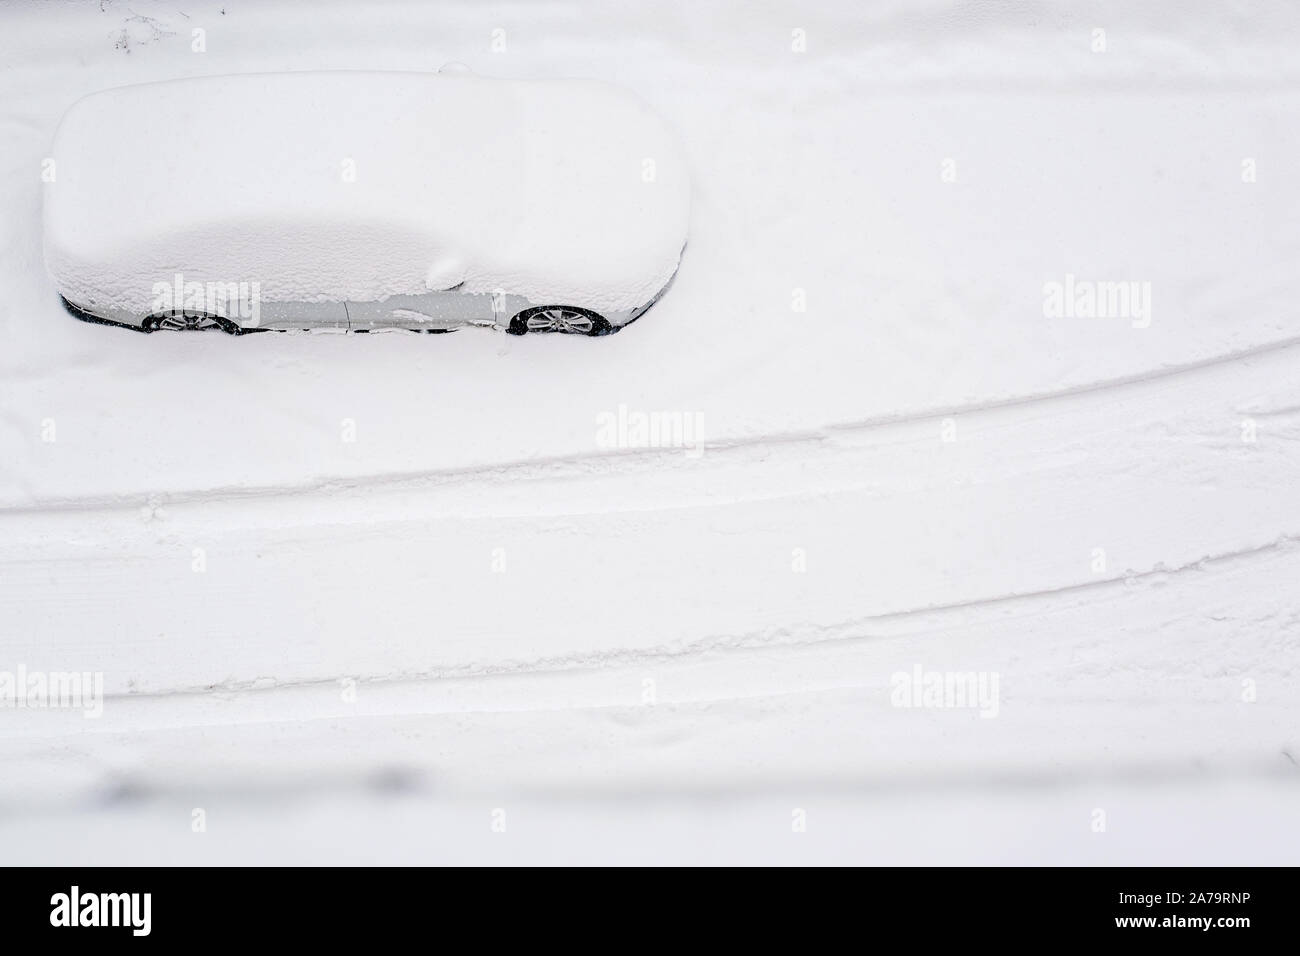 Vue de dessus sur silver car enterré dans la neige sur la route après blizzard. Beaucoup de neige dans la ville. Après une tempête de neige. Copier l'espace. Tempête de neige. L'espace pour le texte. Banque D'Images